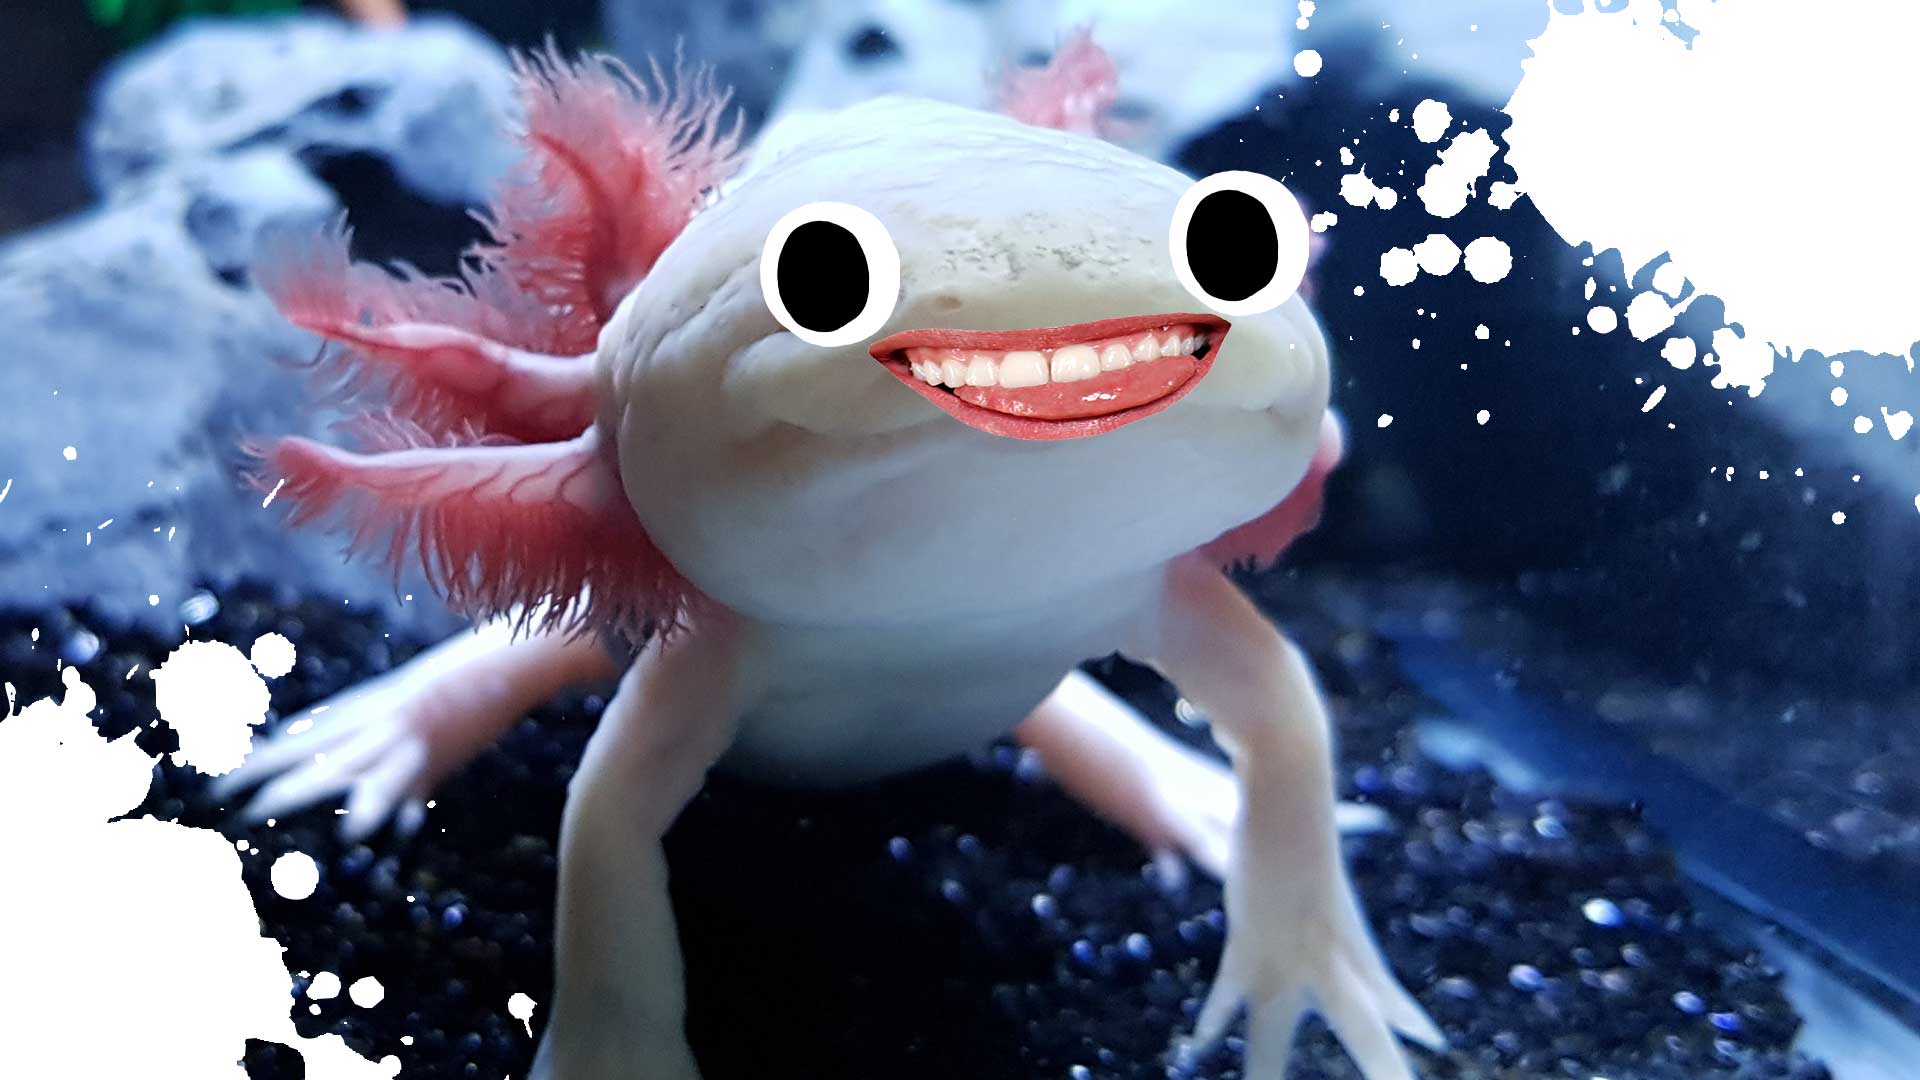 An axolotl smiling in a tank